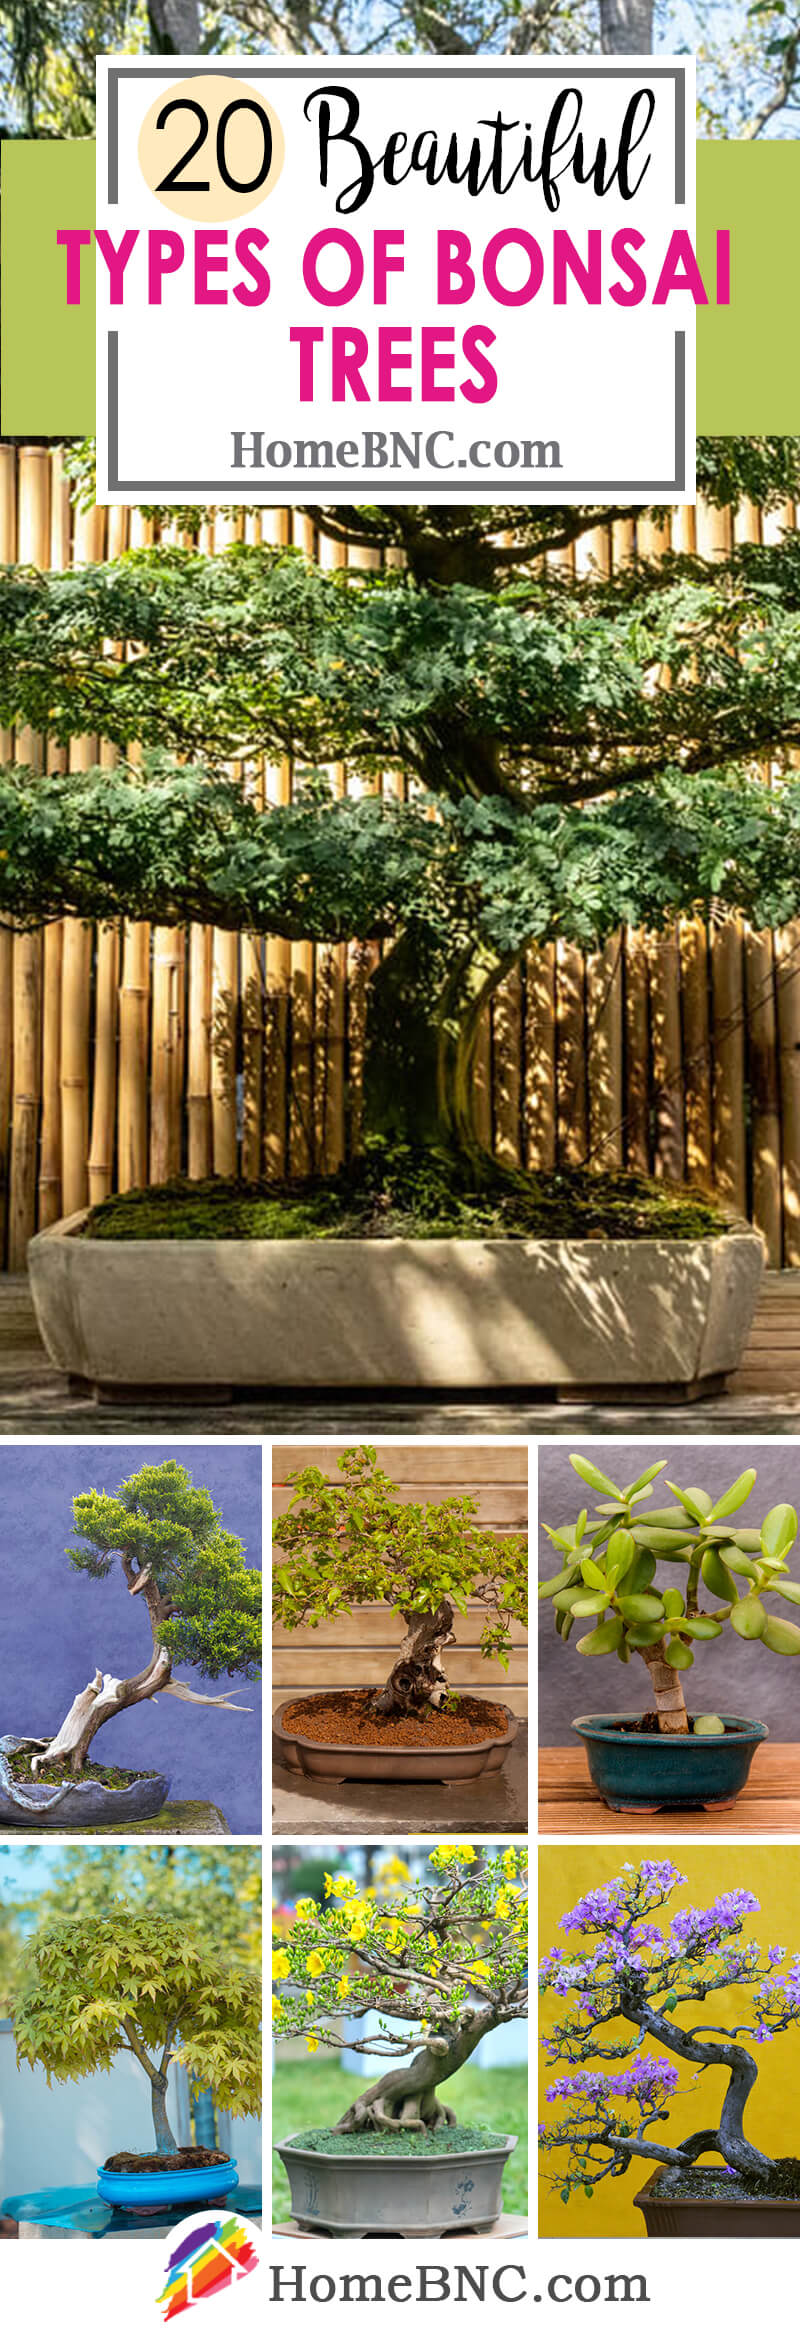 Types of Bonsai Trees